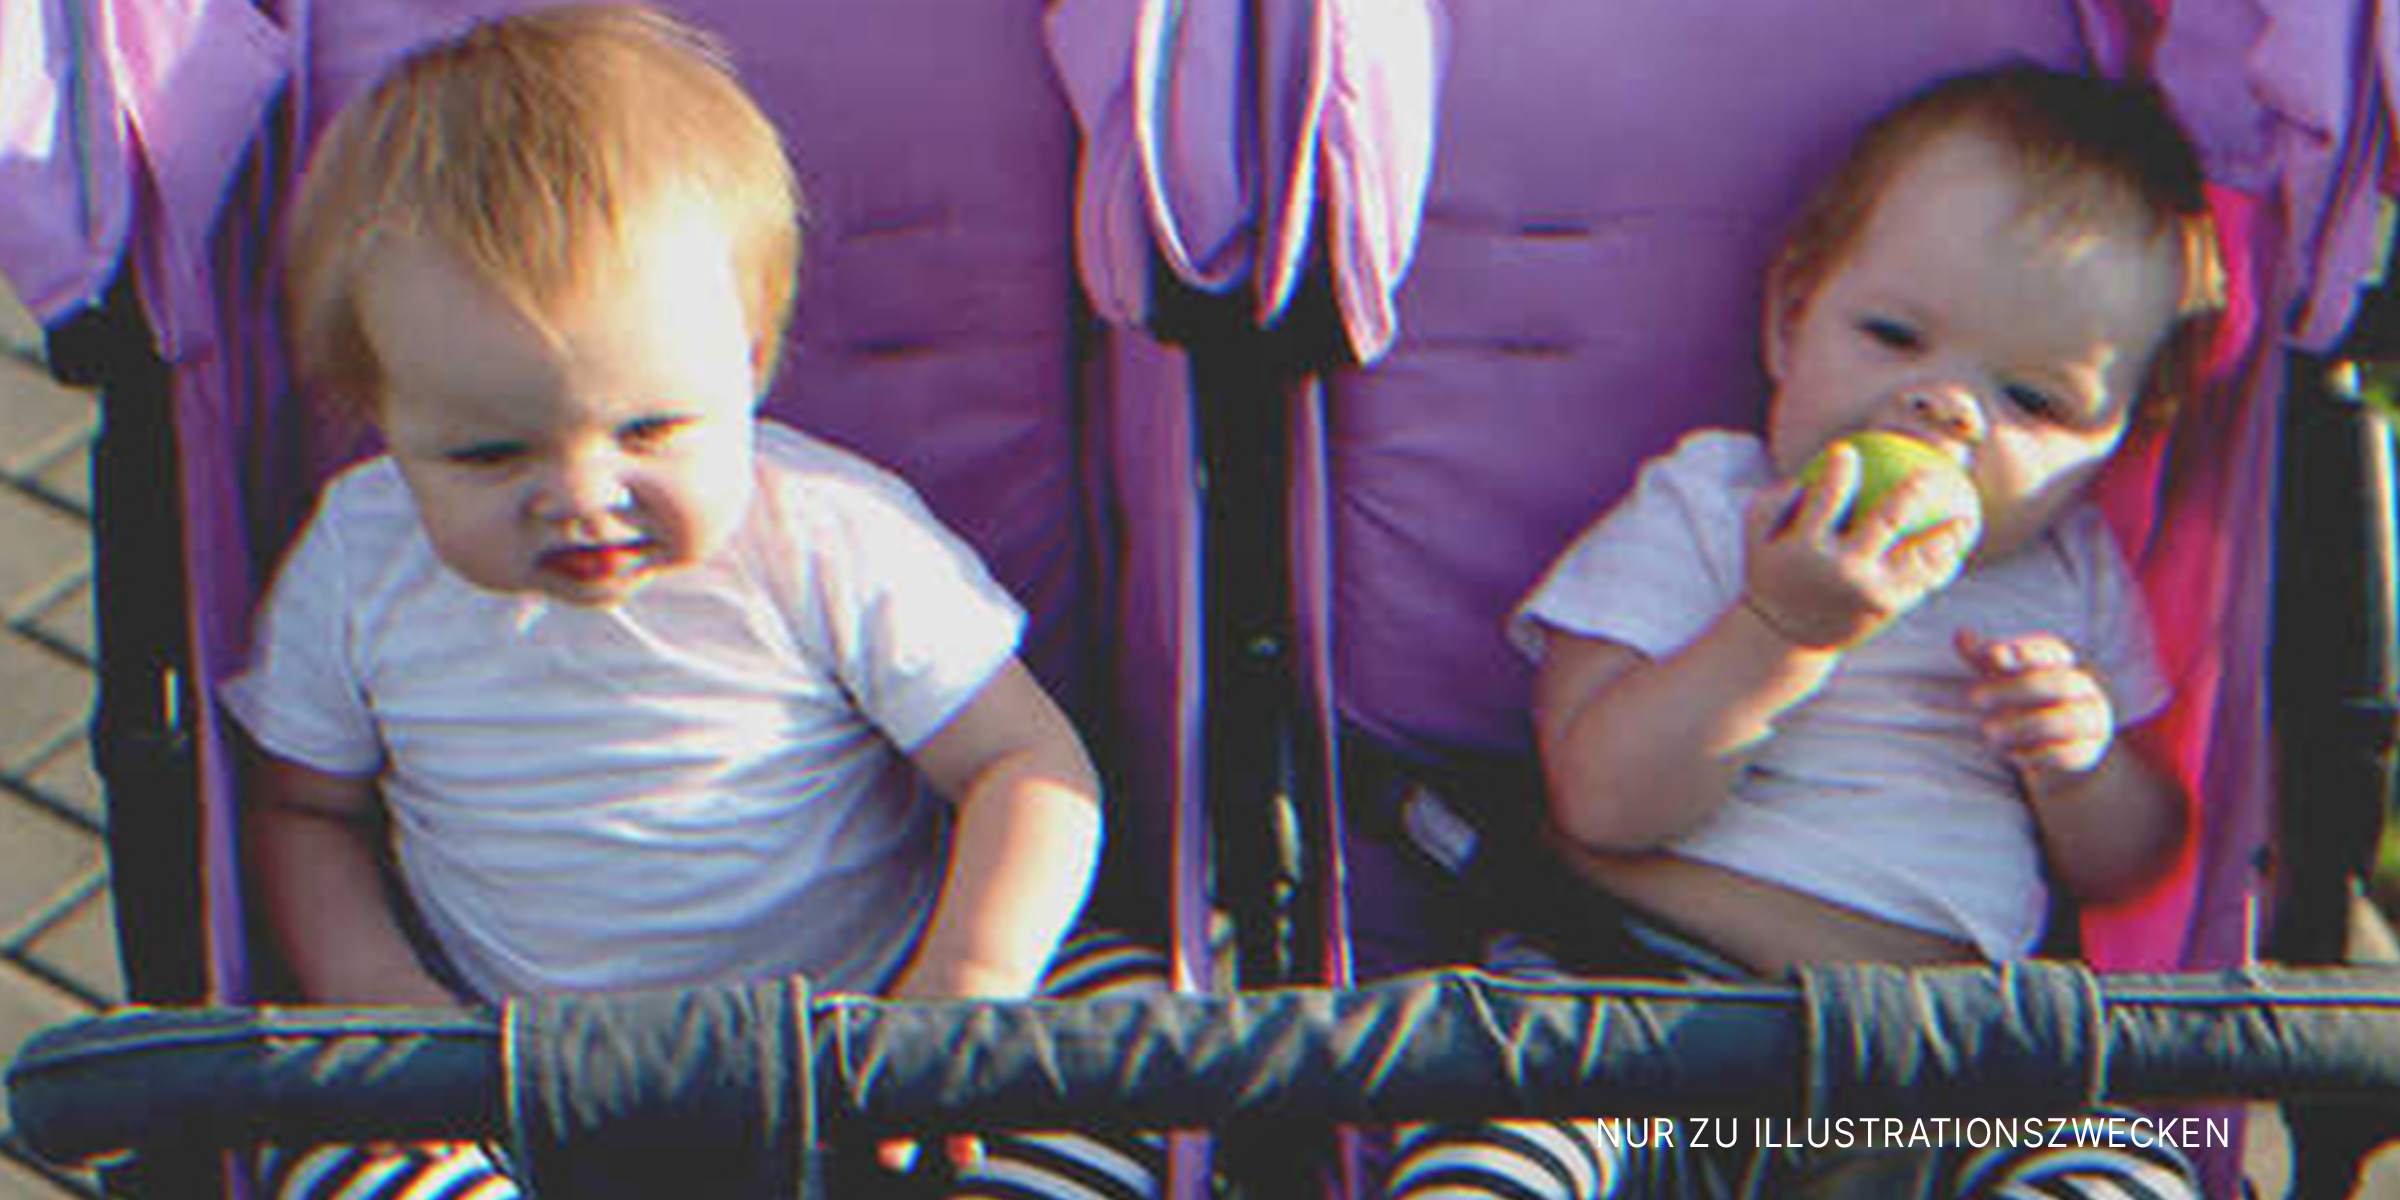 Zwei Babys im Kinderwagen | Quelle: Shutterstock